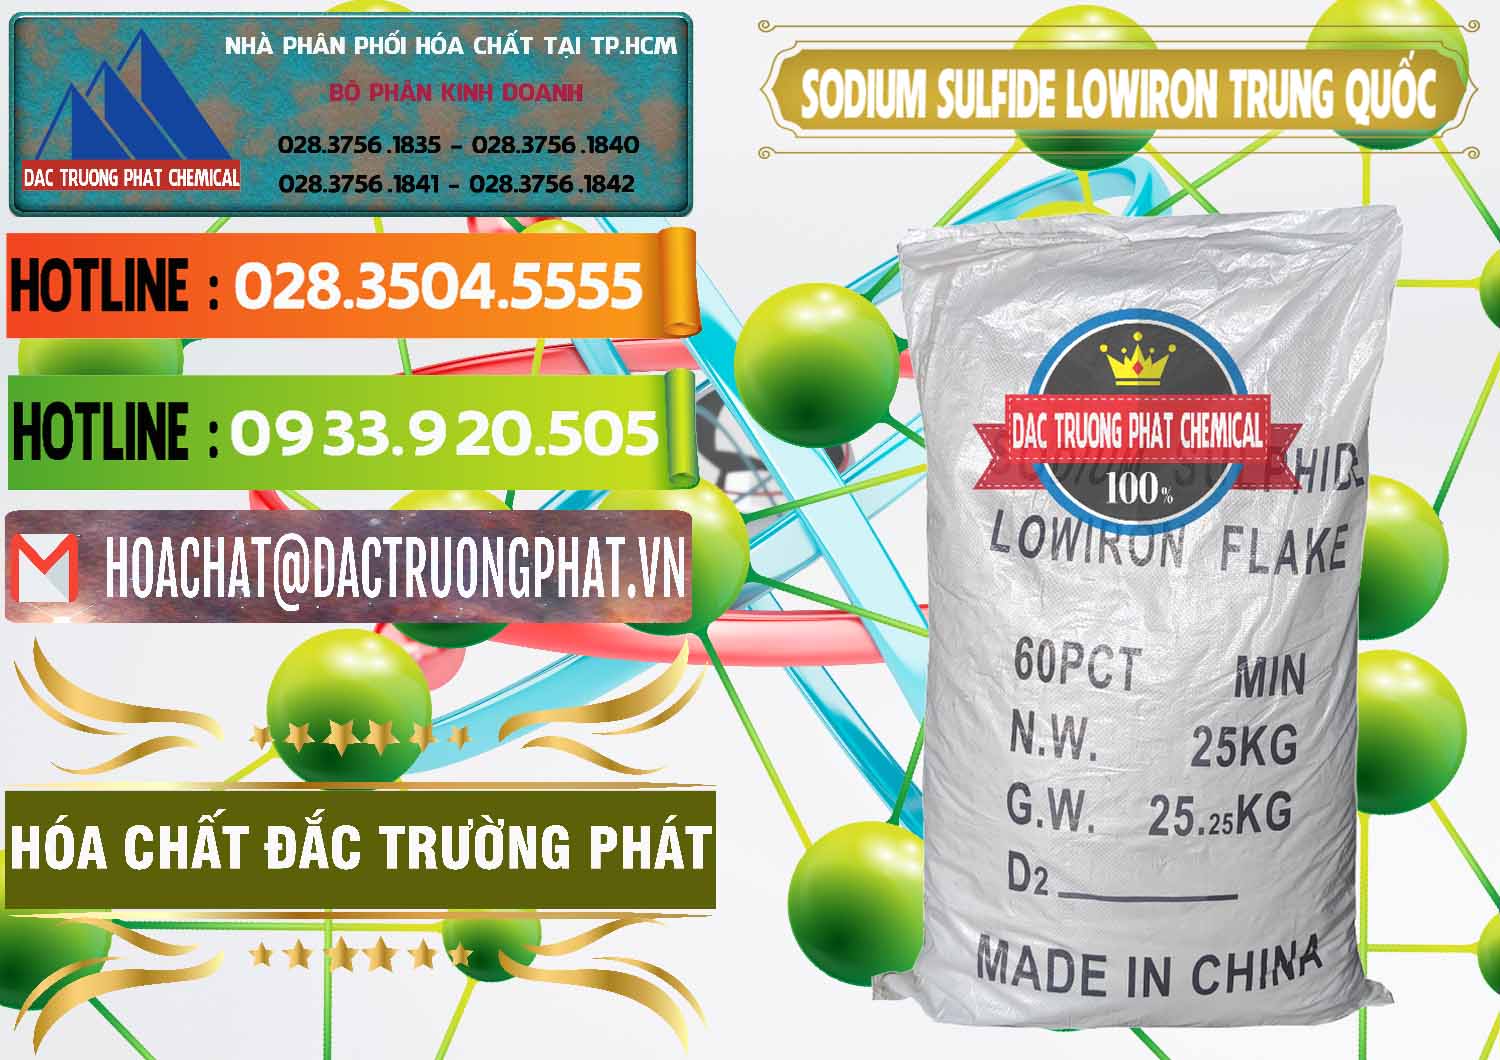 Nơi chuyên kinh doanh - bán Sodium Sulfide NA2S – Đá Thối Lowiron Trung Quốc China - 0227 - Chuyên nhập khẩu & phân phối hóa chất tại TP.HCM - cungcaphoachat.com.vn